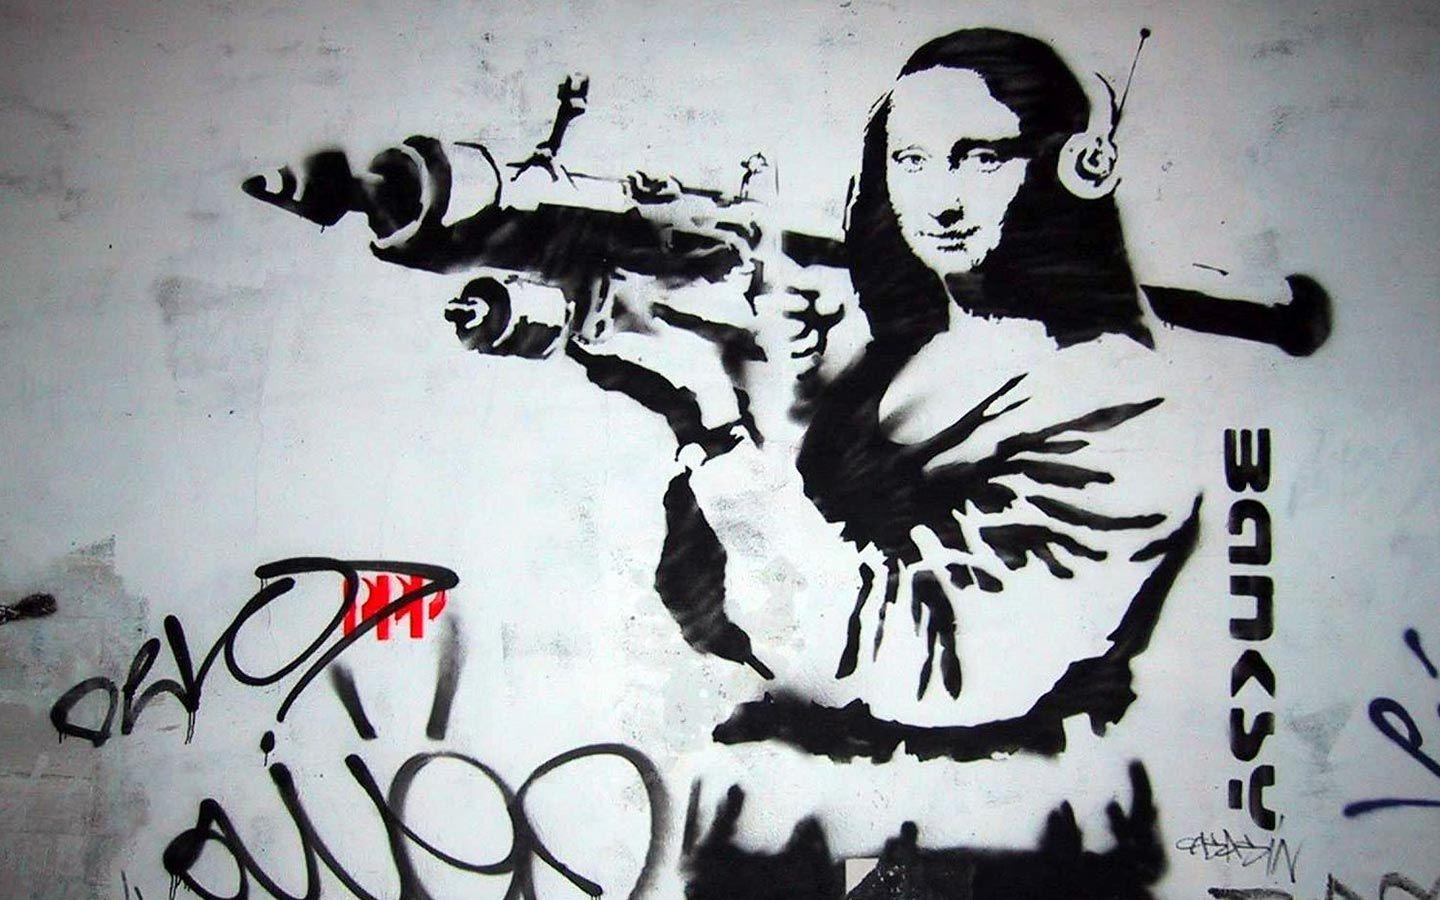 Mona Lisa Bazooka Banksy Wallpaper. ART. Banksy